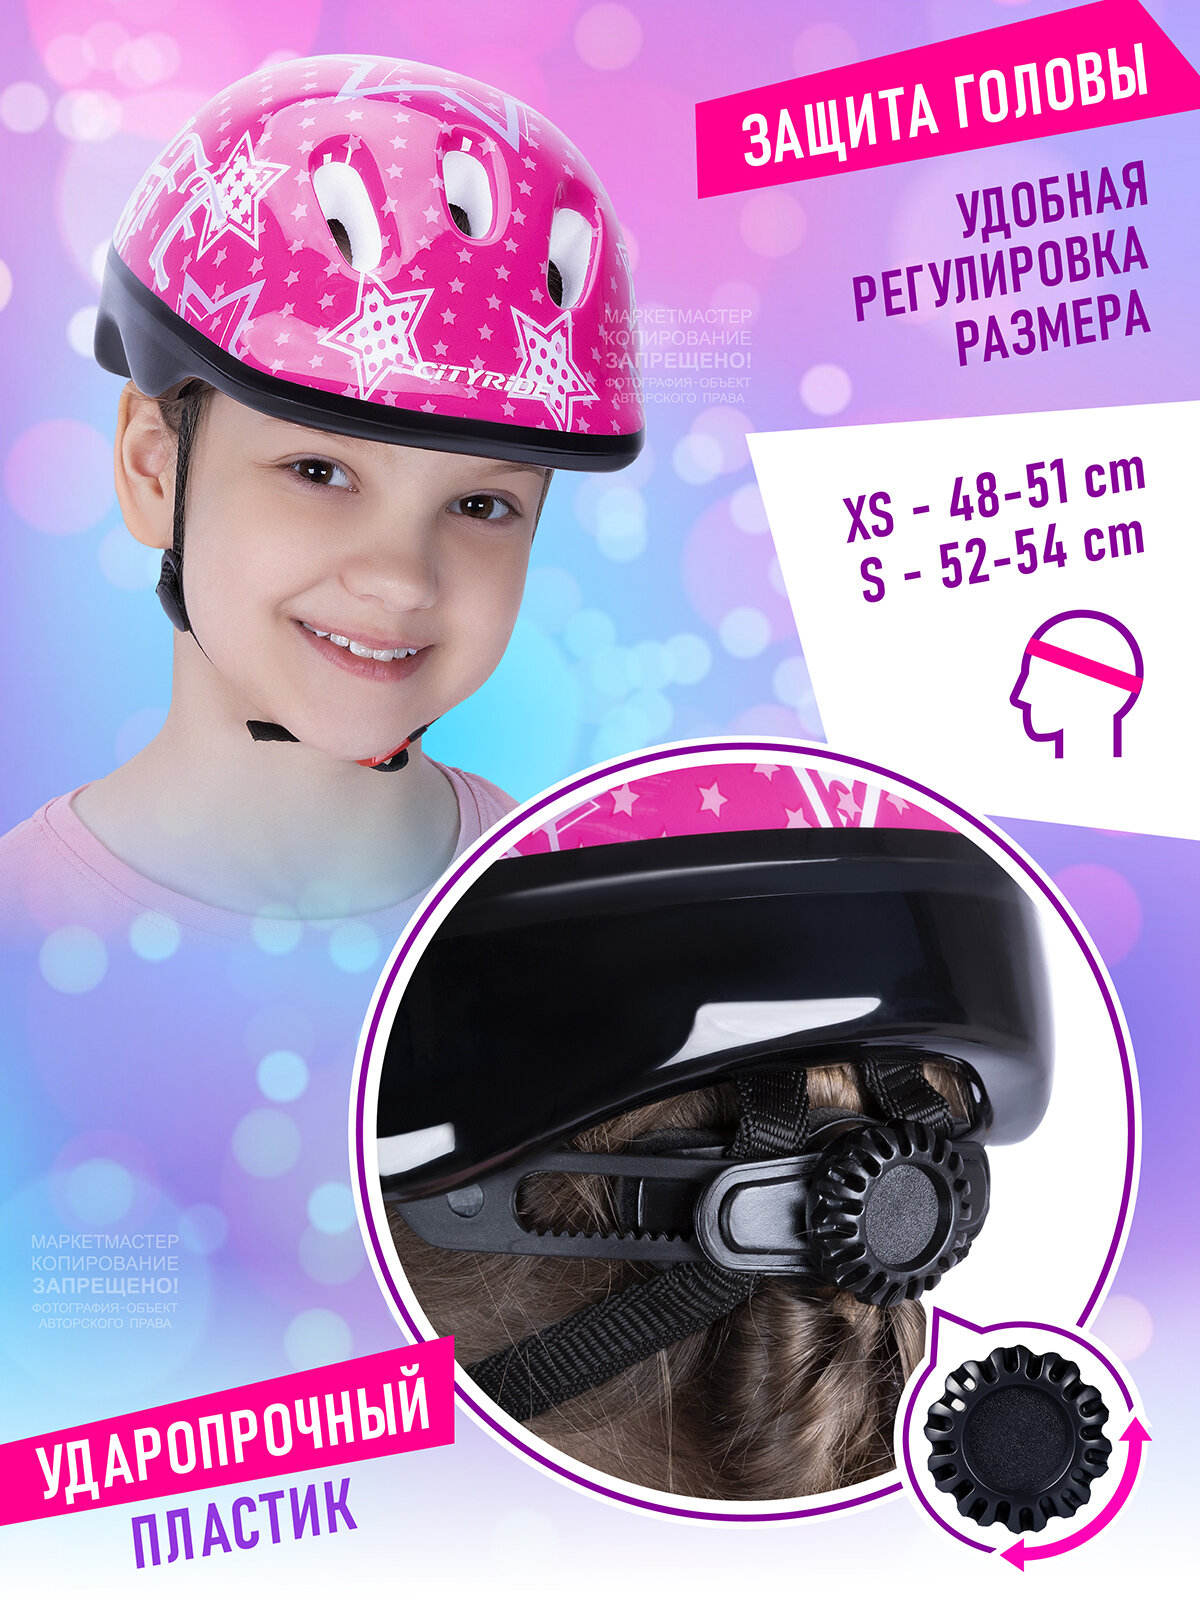 Набор CITYRIDE роликовые коньки-квады, шлем, защита, пластиковый мысок, колёса PU 80/40 мм, JB8800101/S